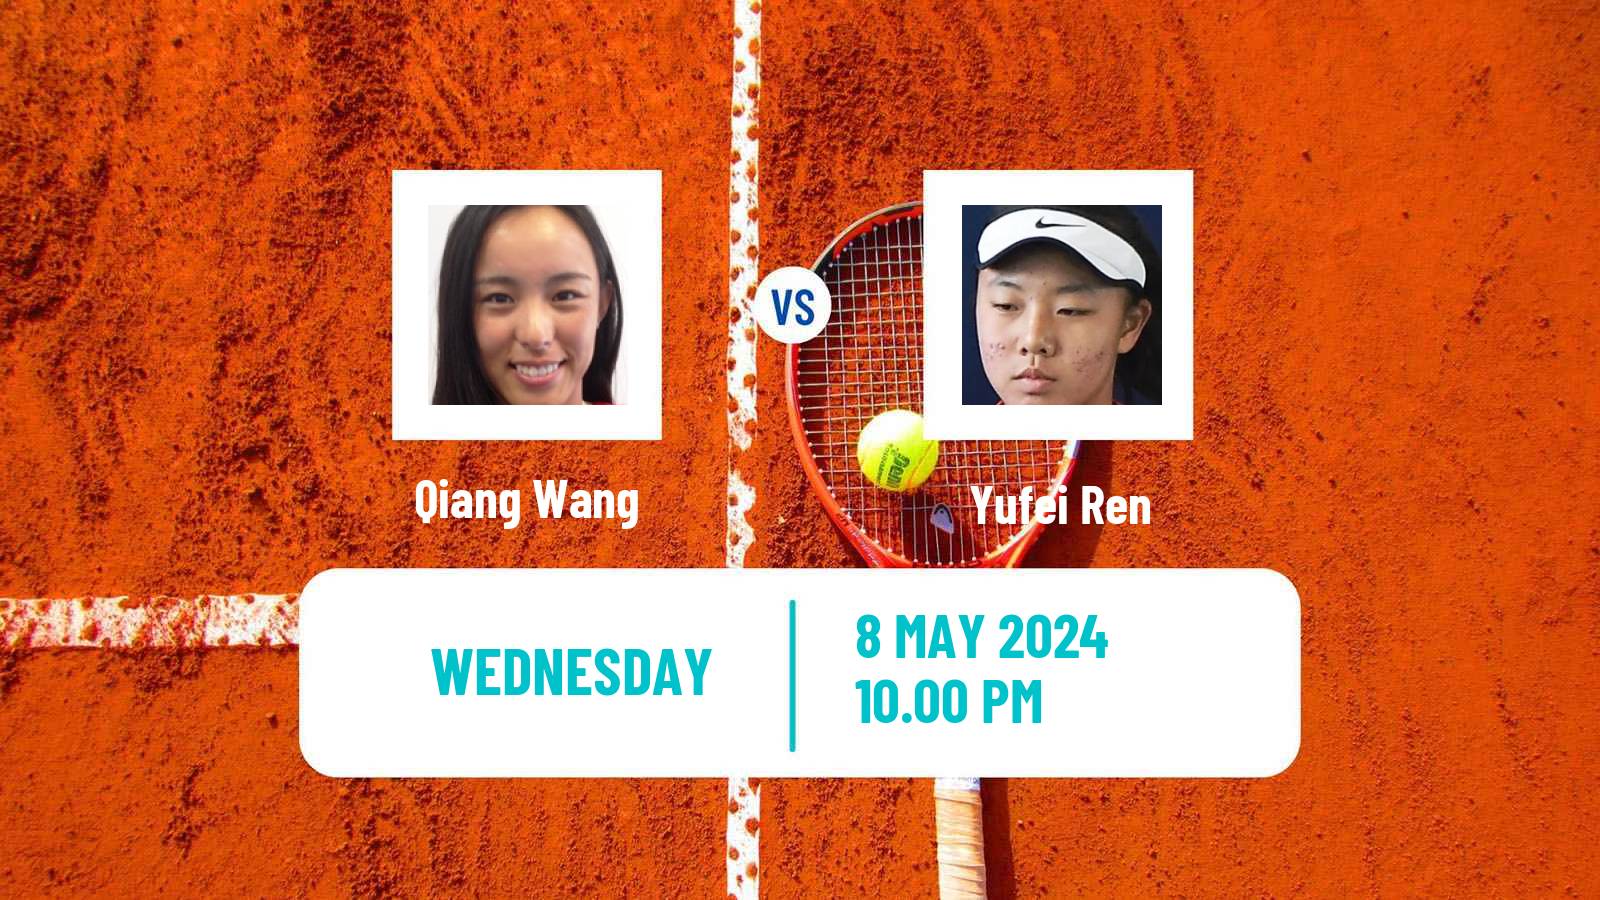 Tennis ITF W75 Luan Women Qiang Wang - Yufei Ren